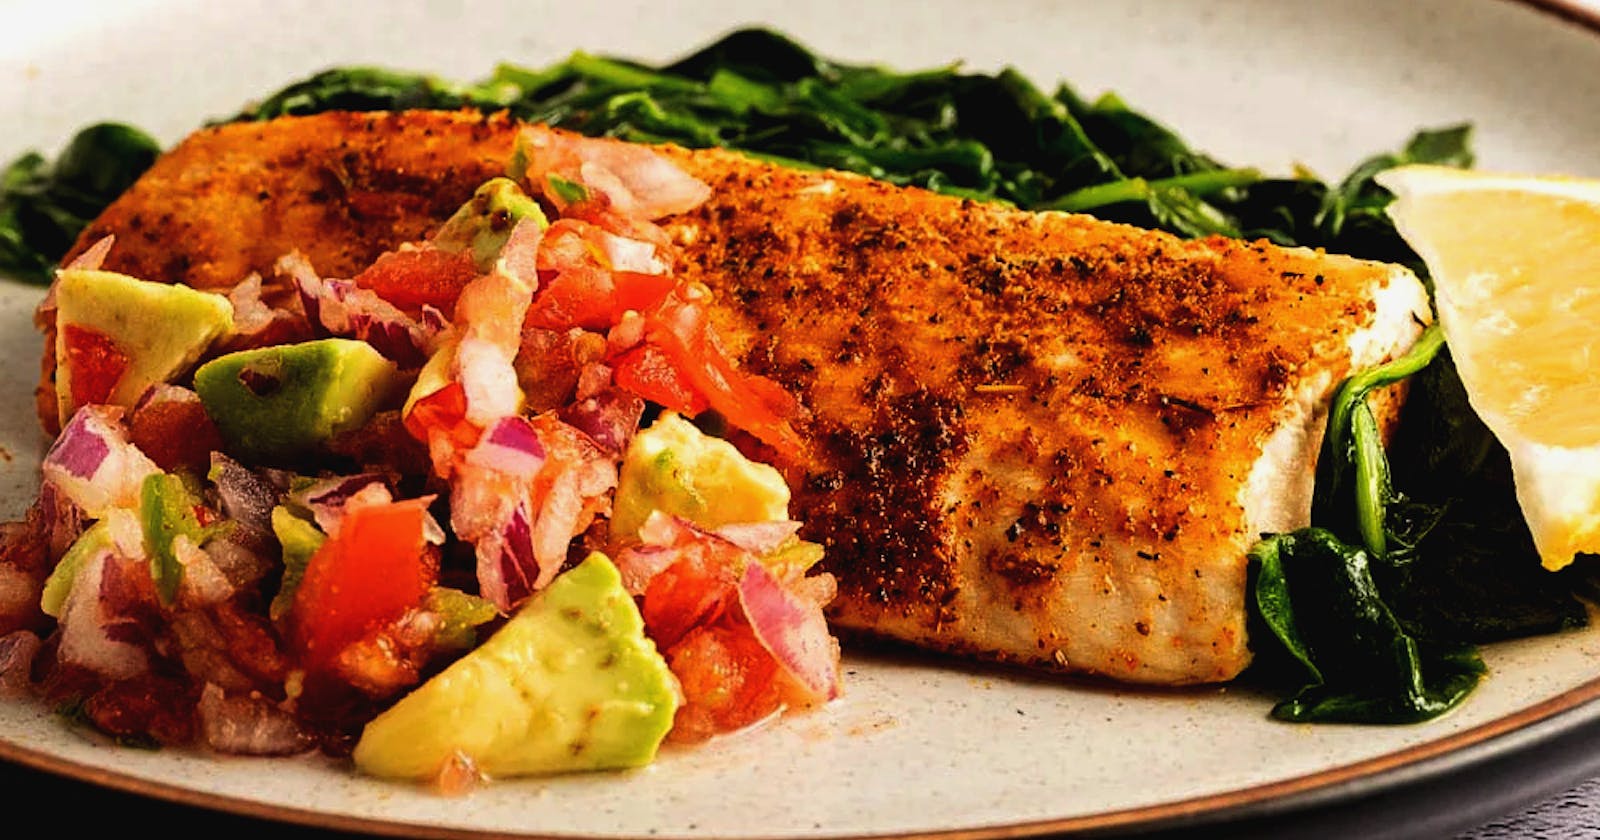 Best Way to Make Mahi Mahi Recipe Air Fryer – Recipe for Chicken, Fish & Veggies!